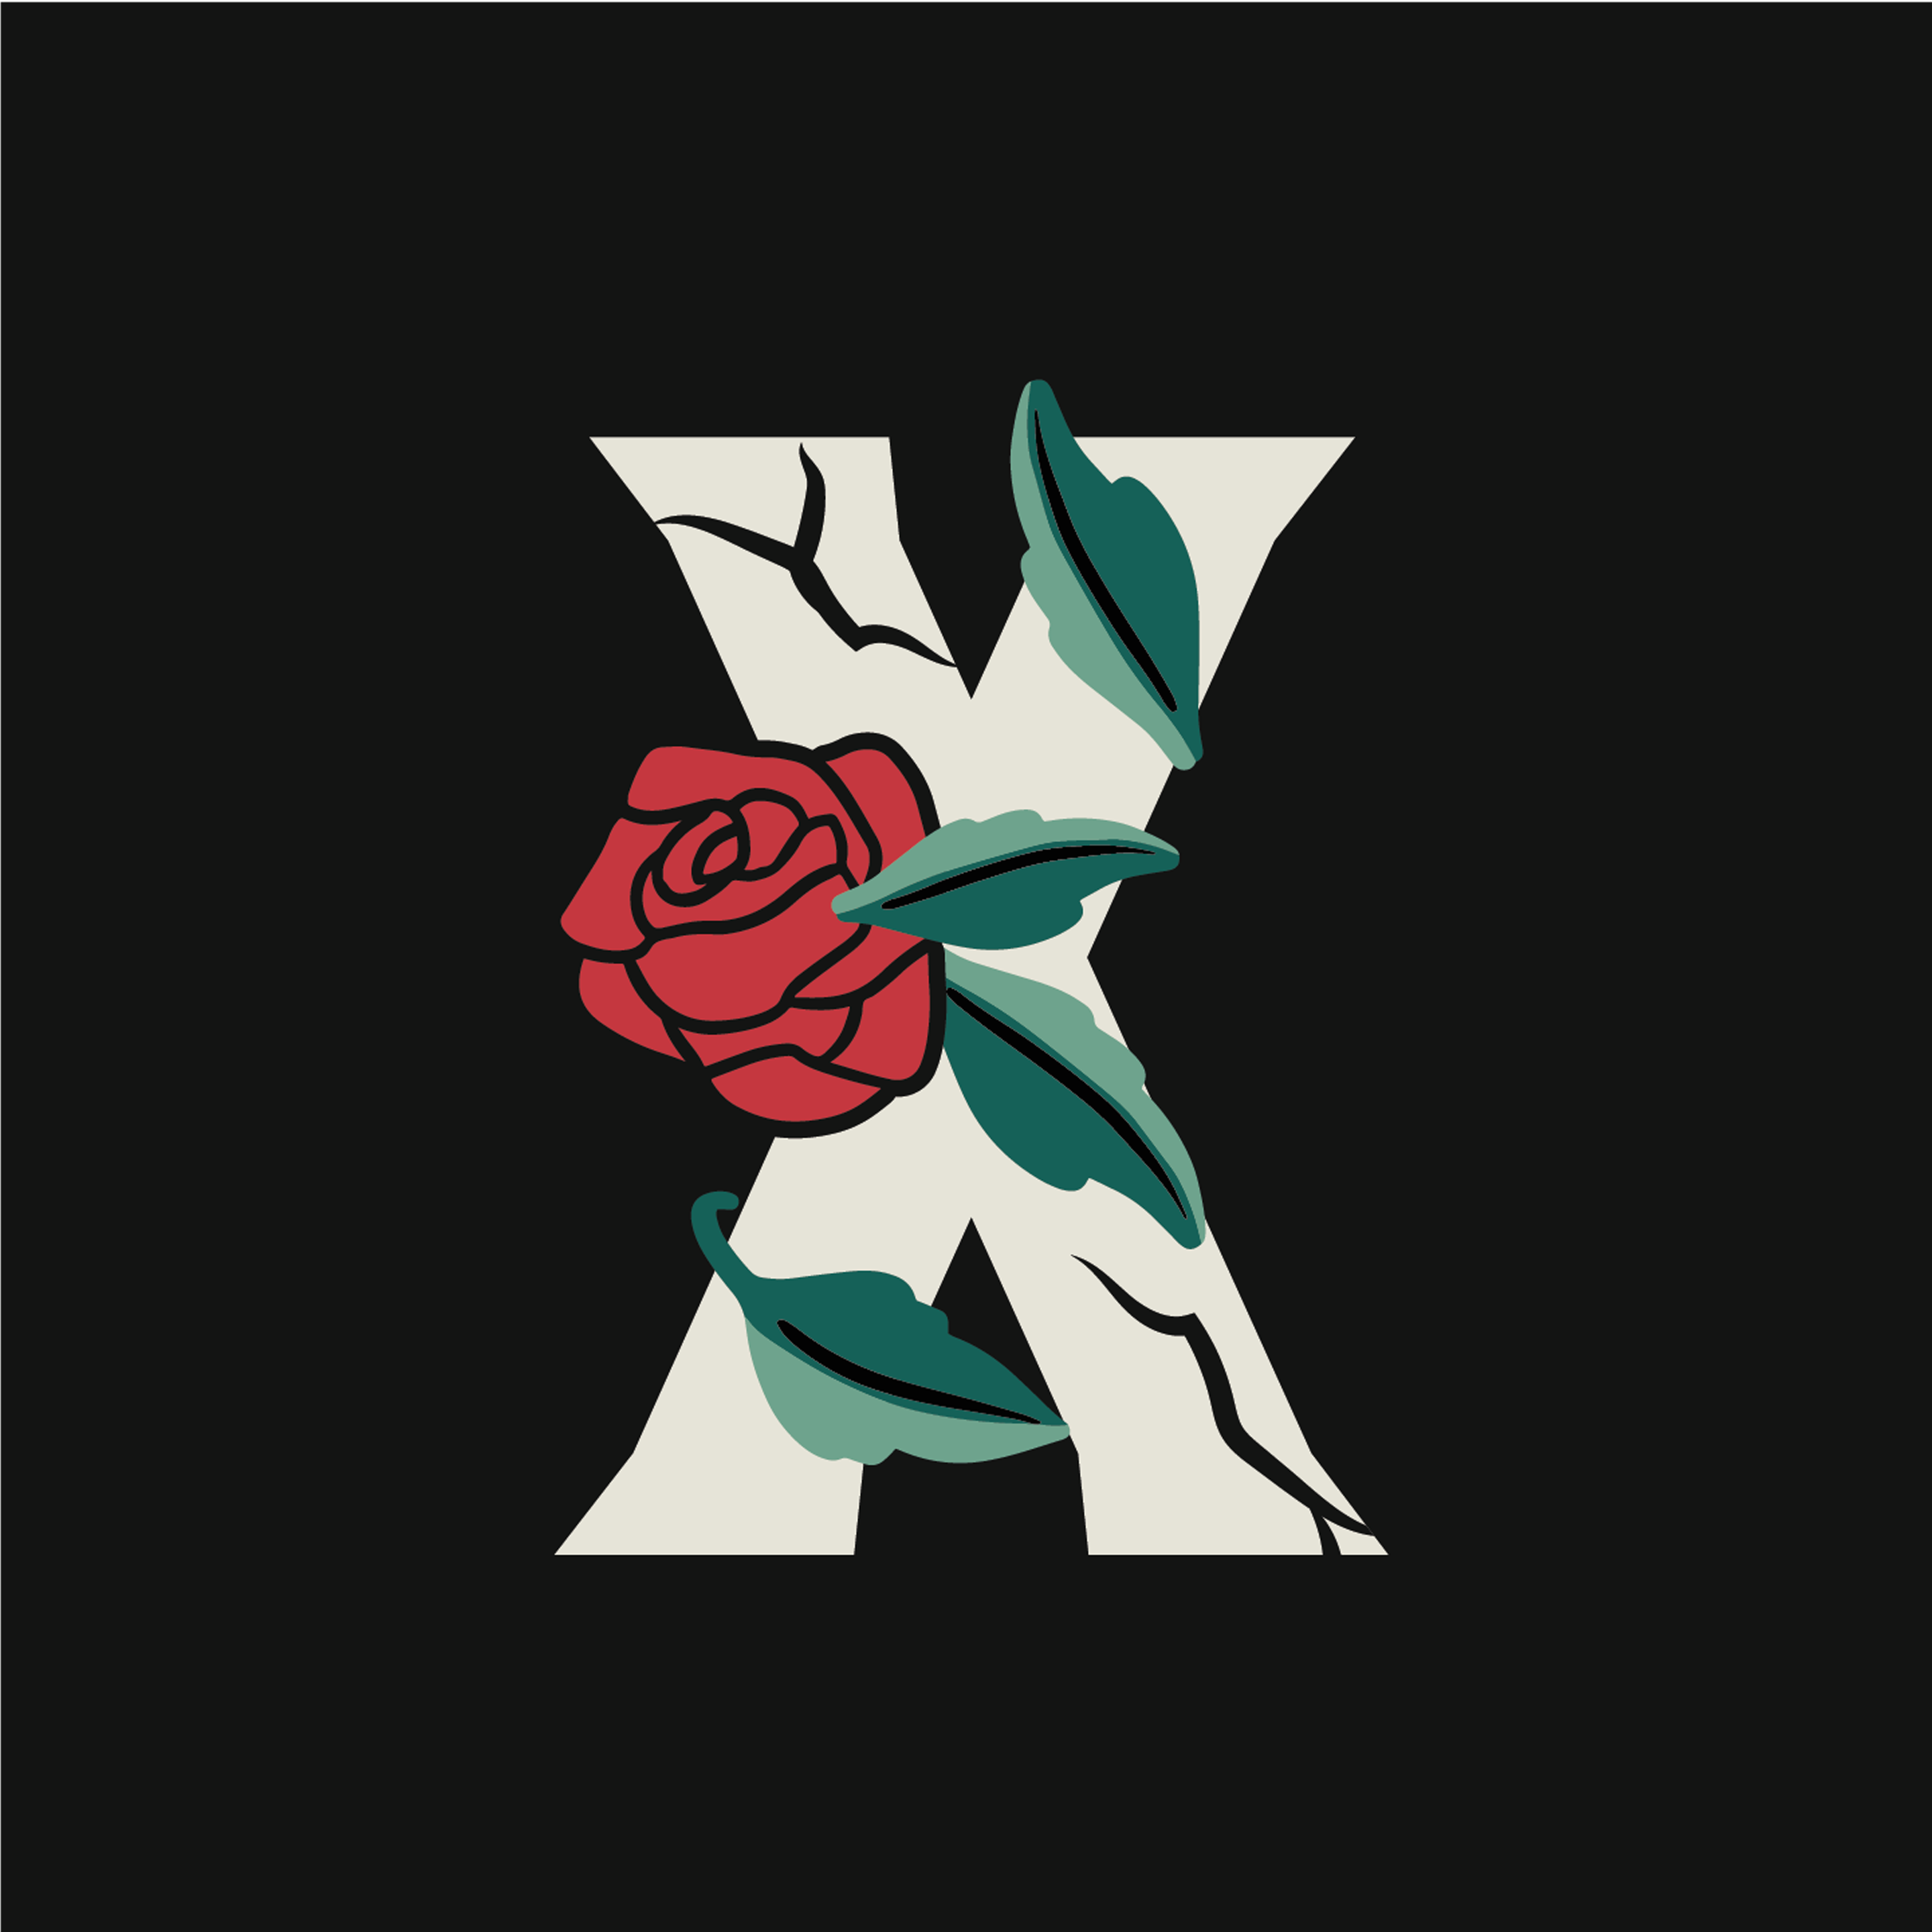 rose-letter-x-design-theme